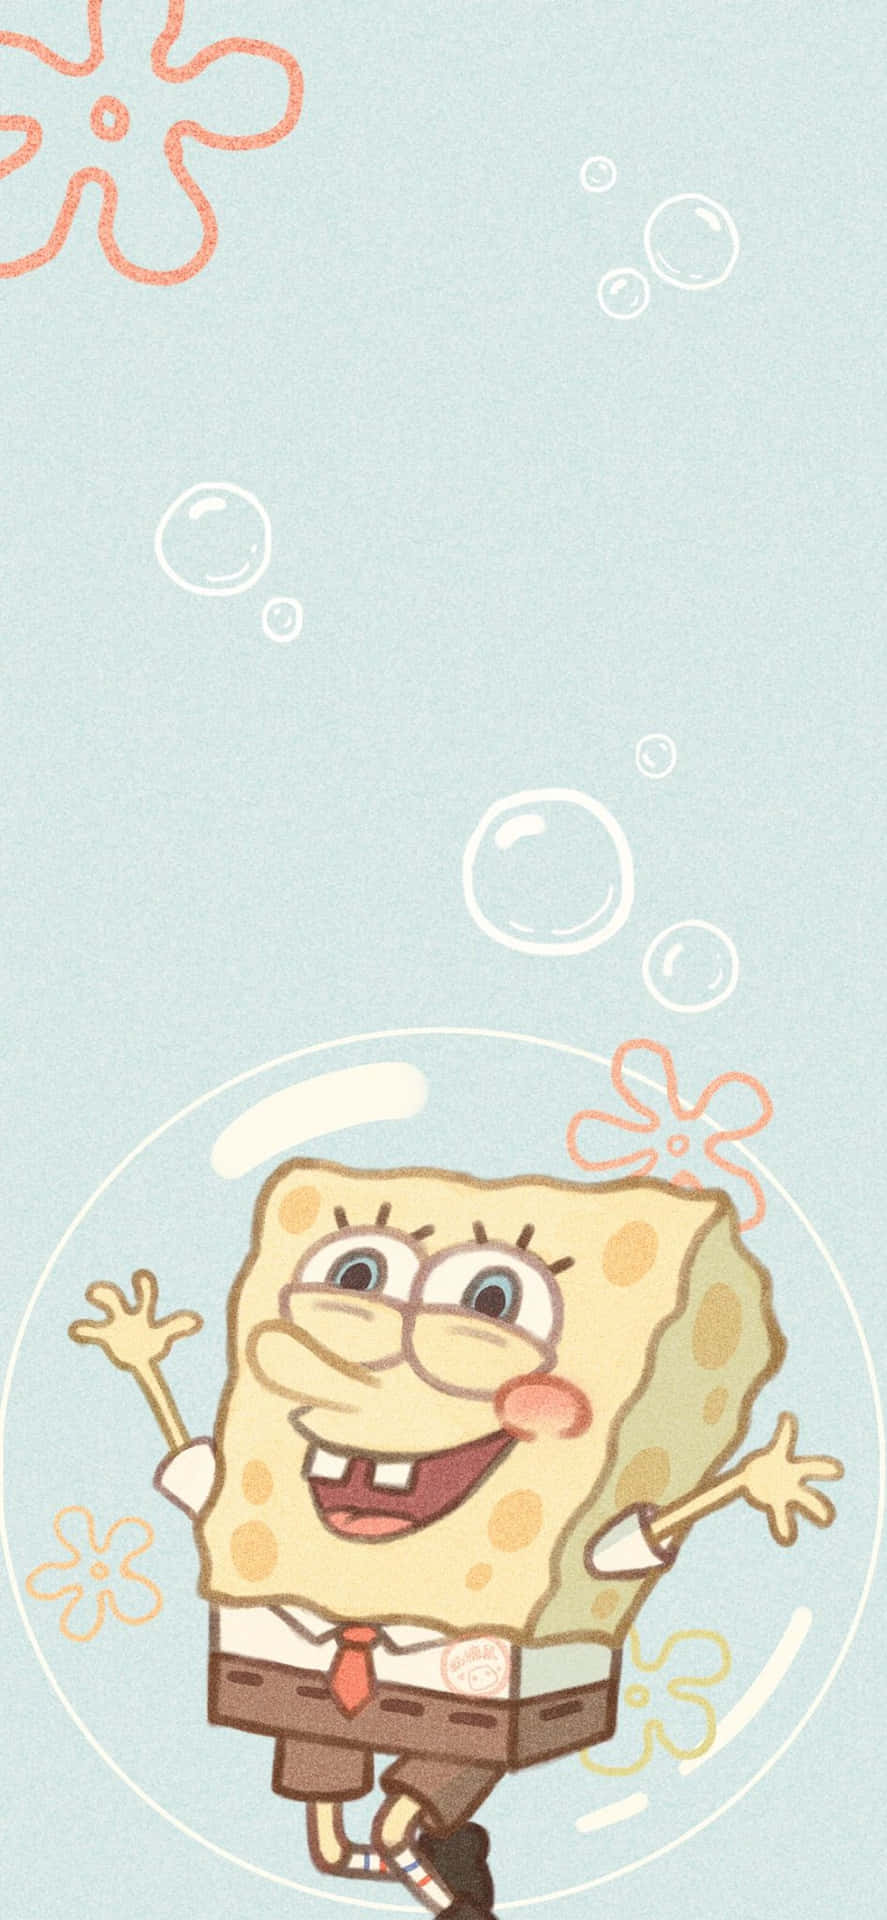 Aesthetic SpongeBob Inside A Bubble Wallpaper